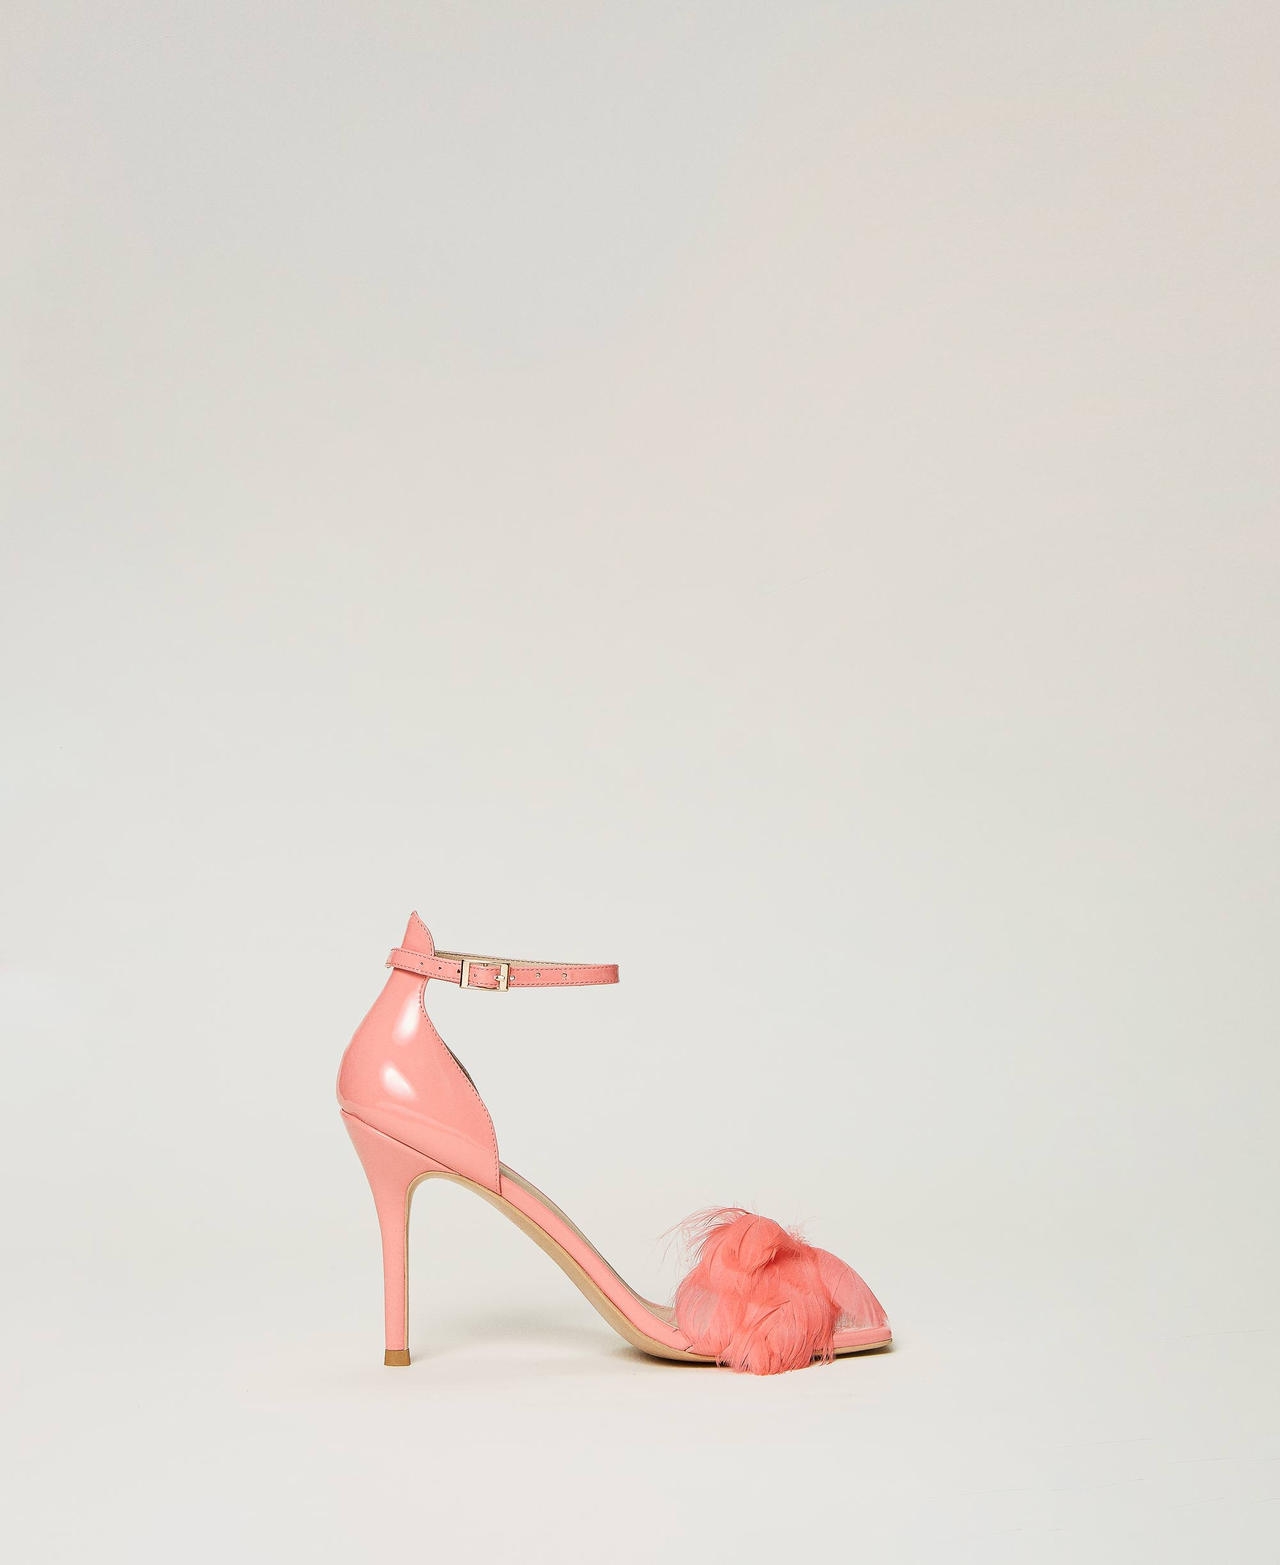 twinset scarpe - sandali in vernice con piume, rosa tropical pink, taglia: 39 donna